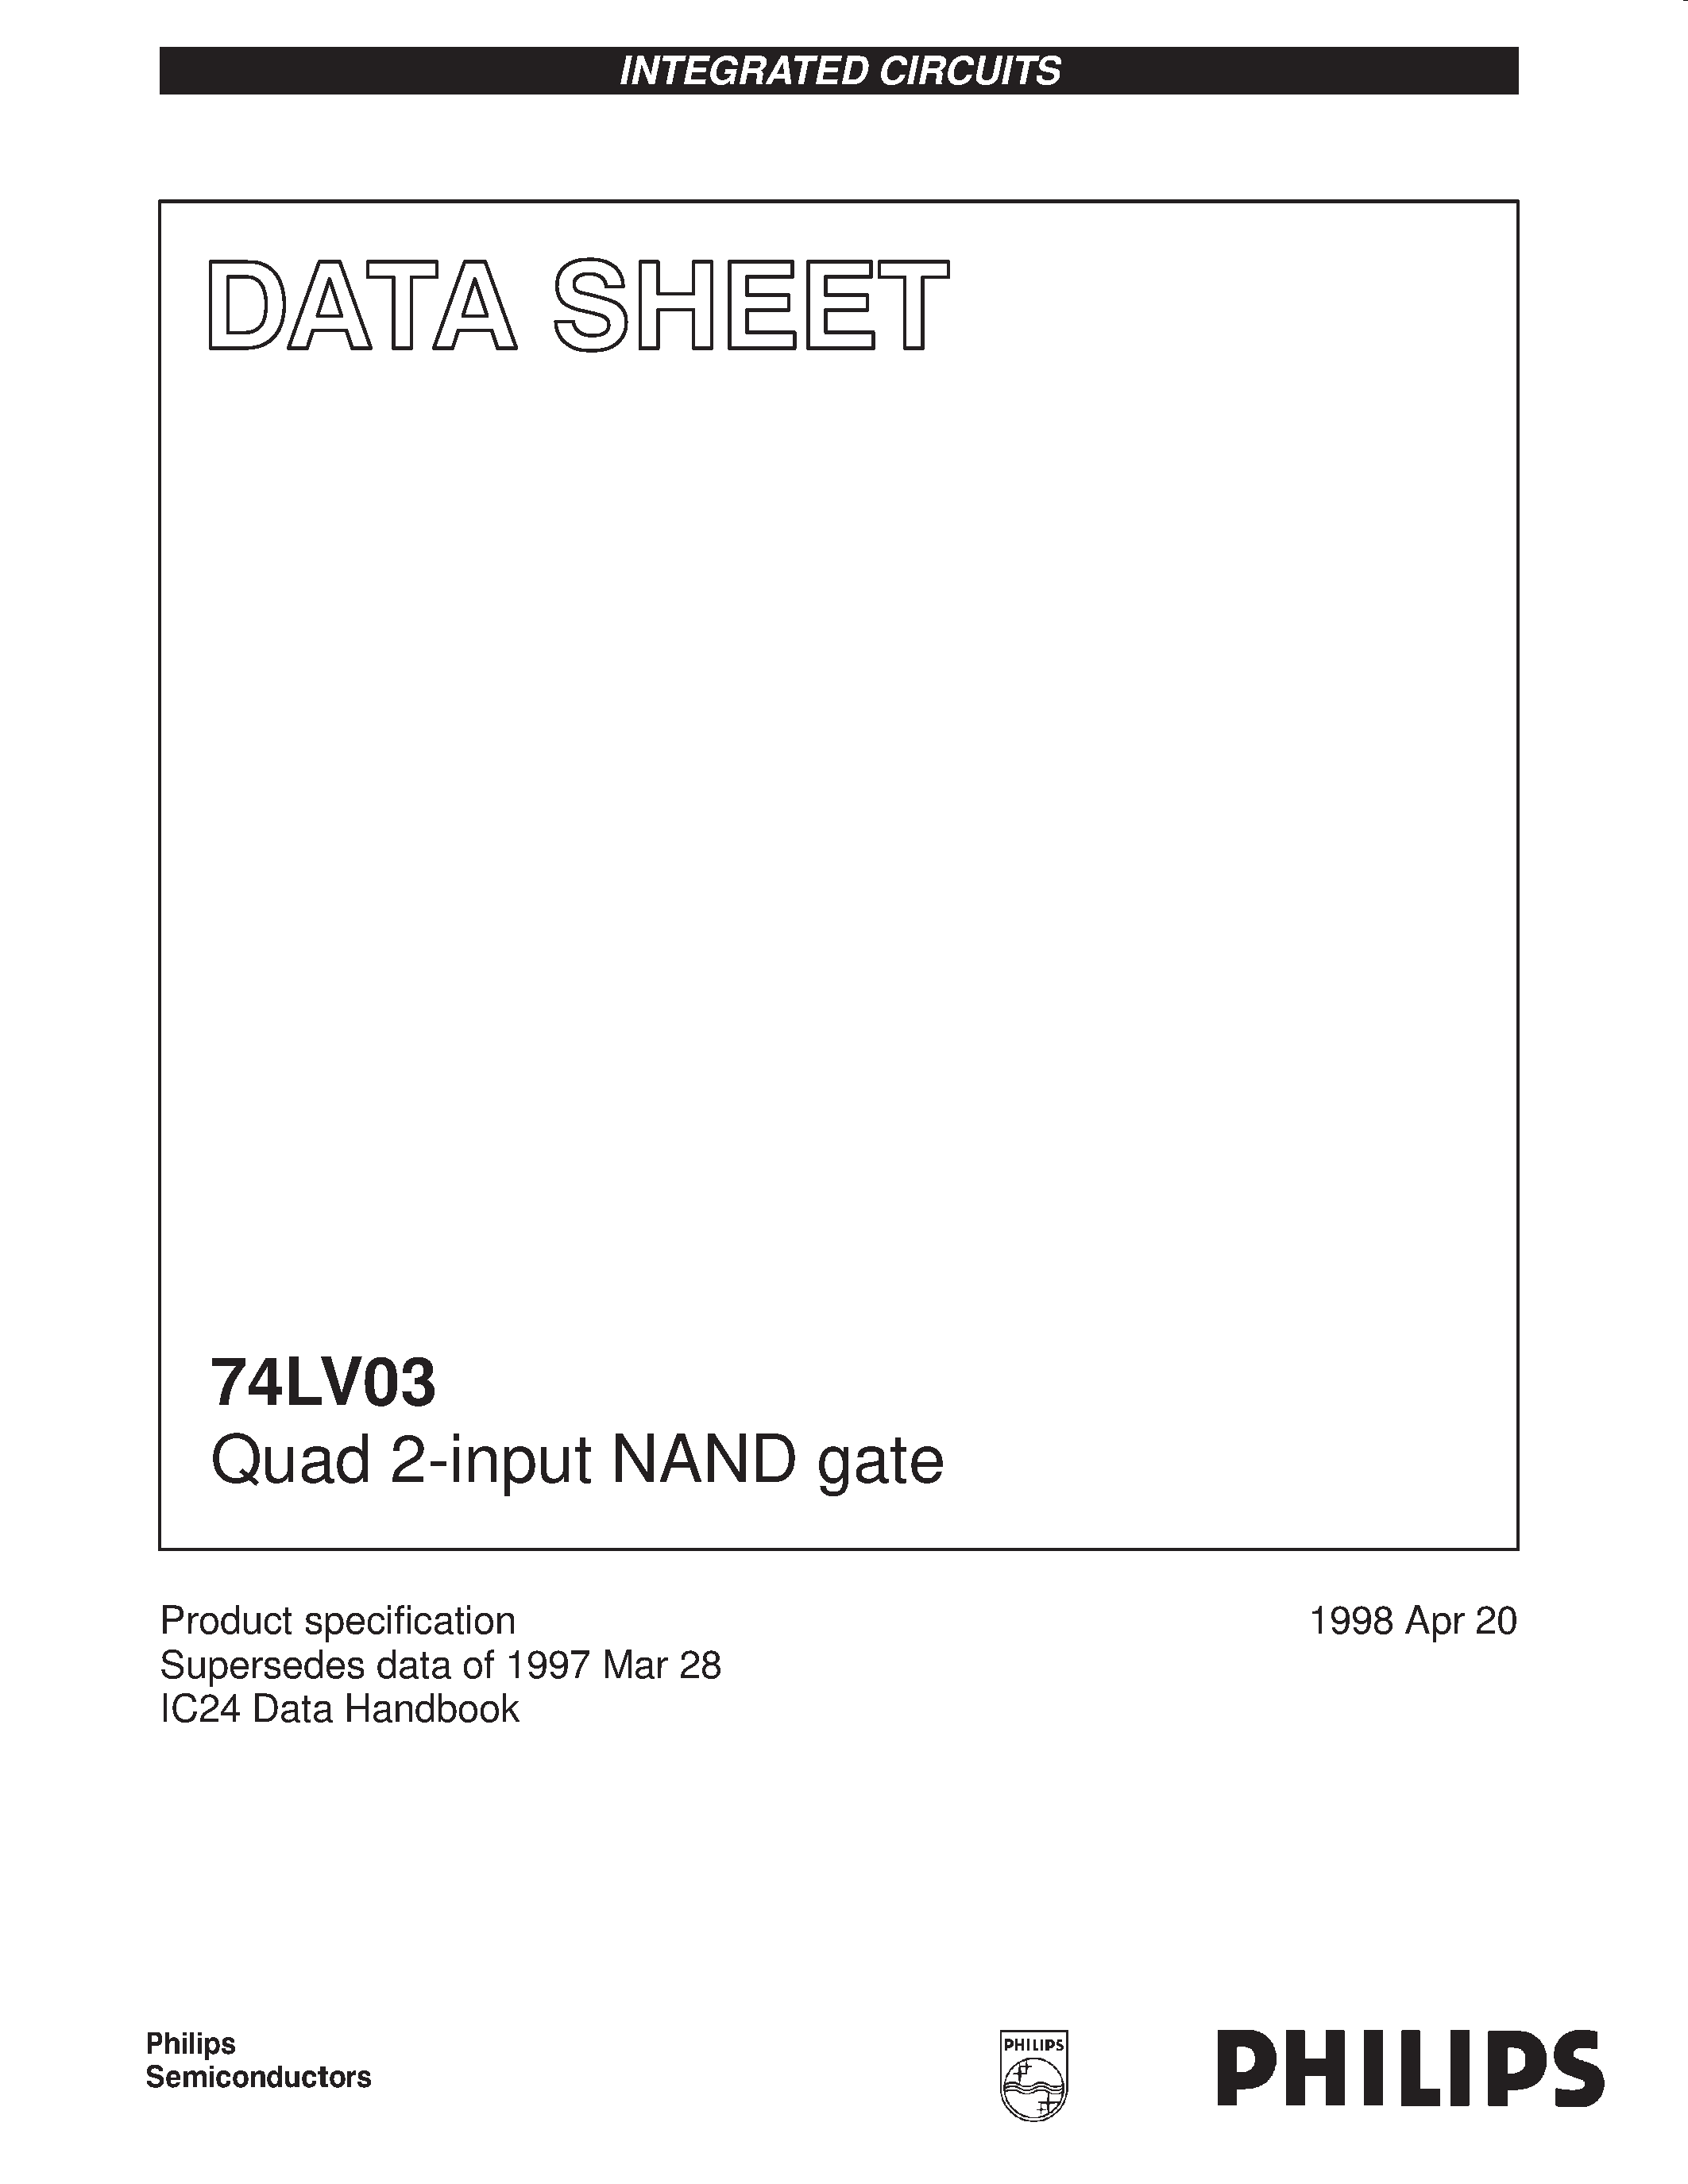 Даташит 74LV03 - Quad 2-input NAND gate страница 1